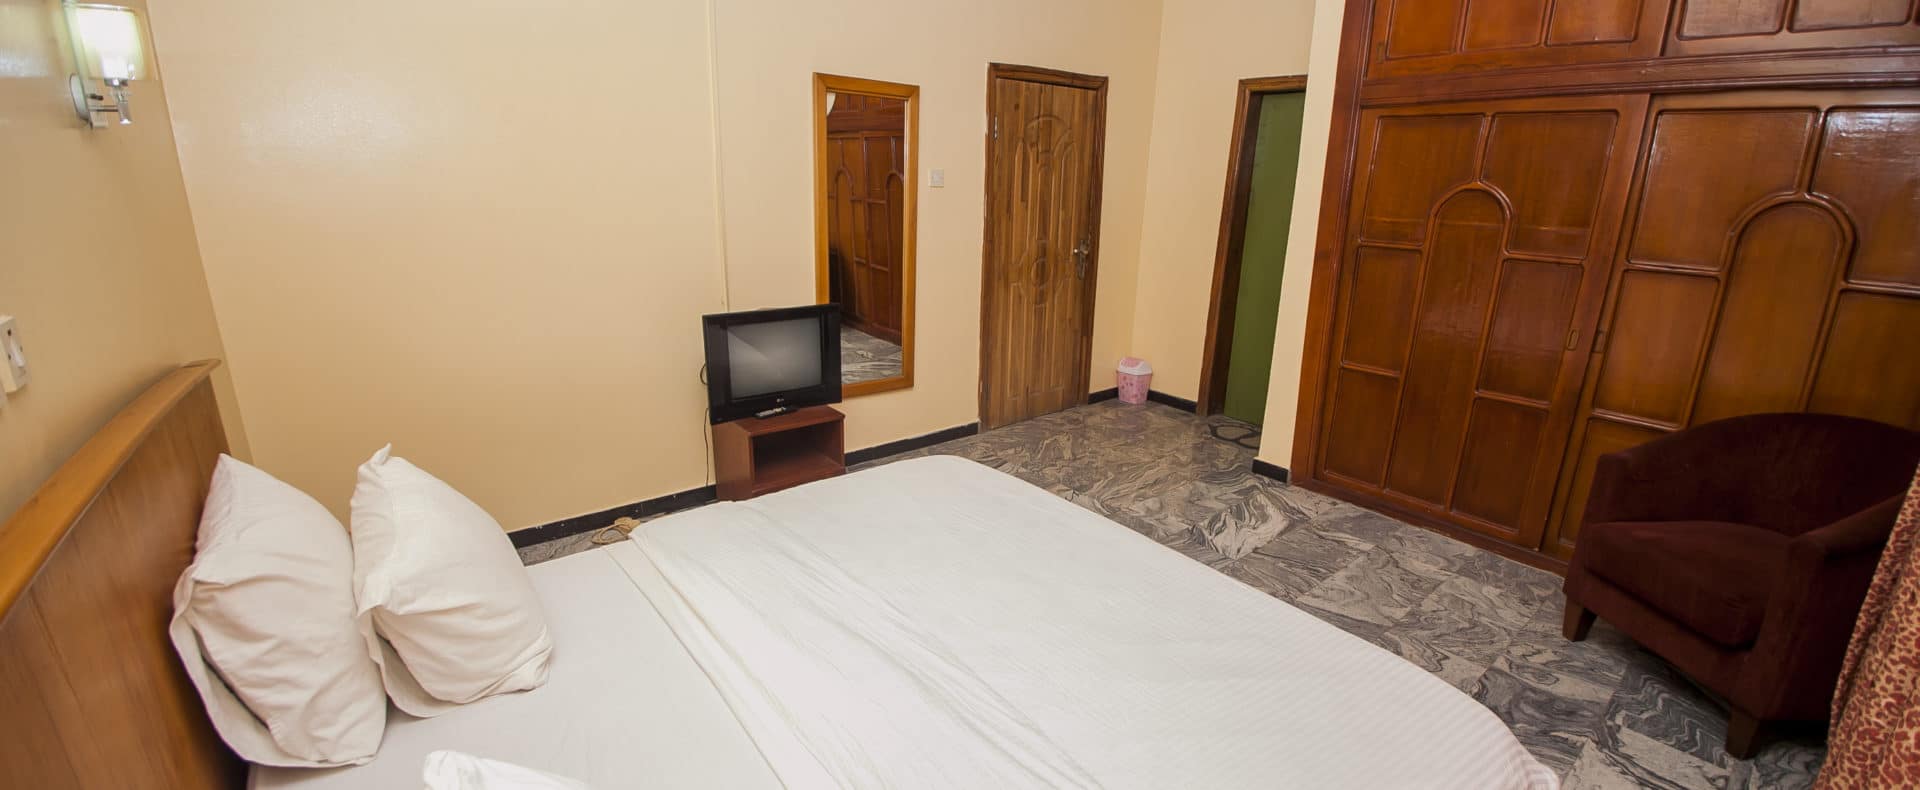 Hotel Suite In Lagos Nigeria